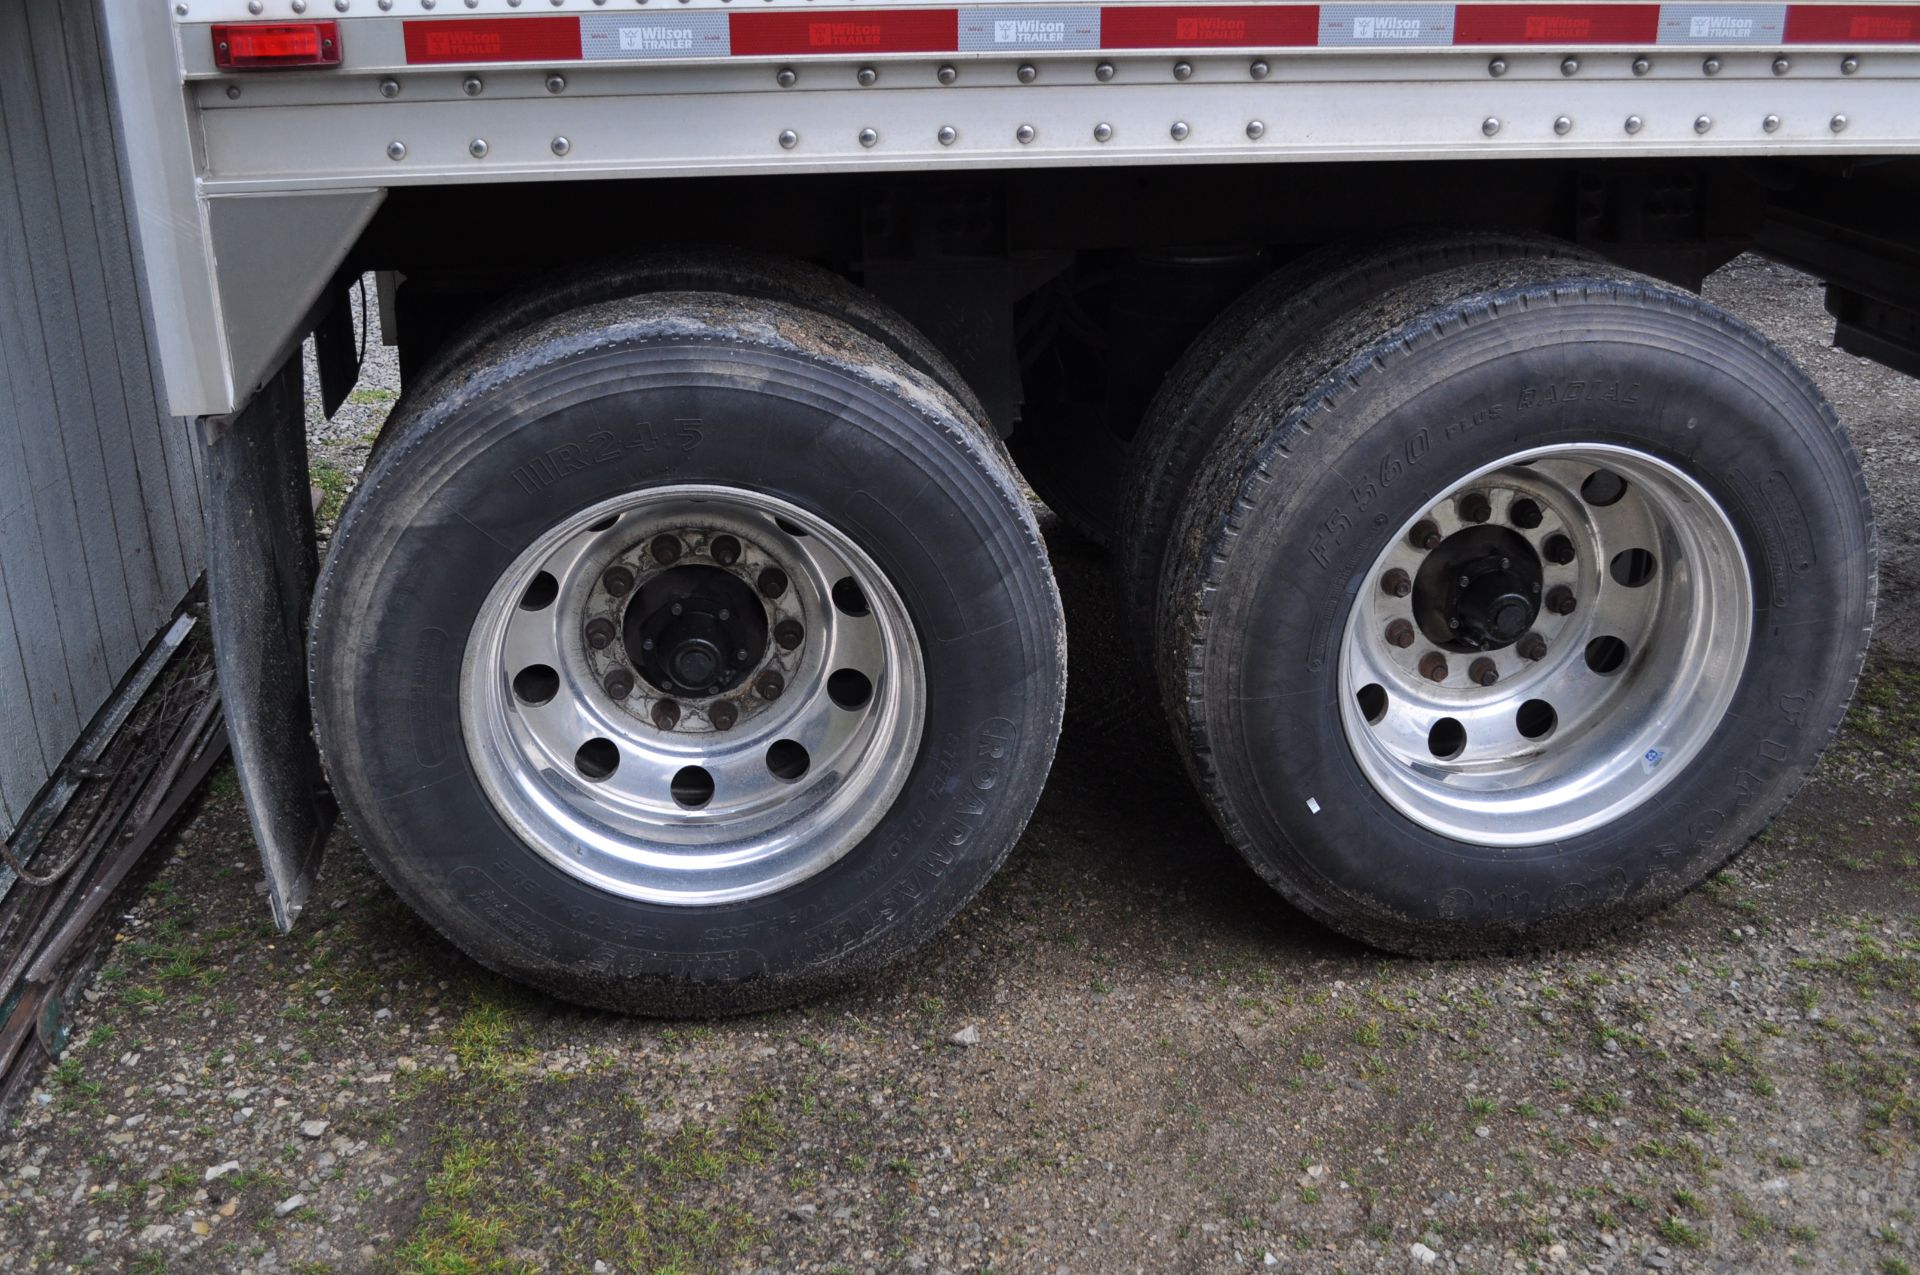 2016 Wilson Pacesetter 41’ hopper trailer, 66” sides, air ride, 11R24.5 tires, alum rims, roll tarp - Image 4 of 15